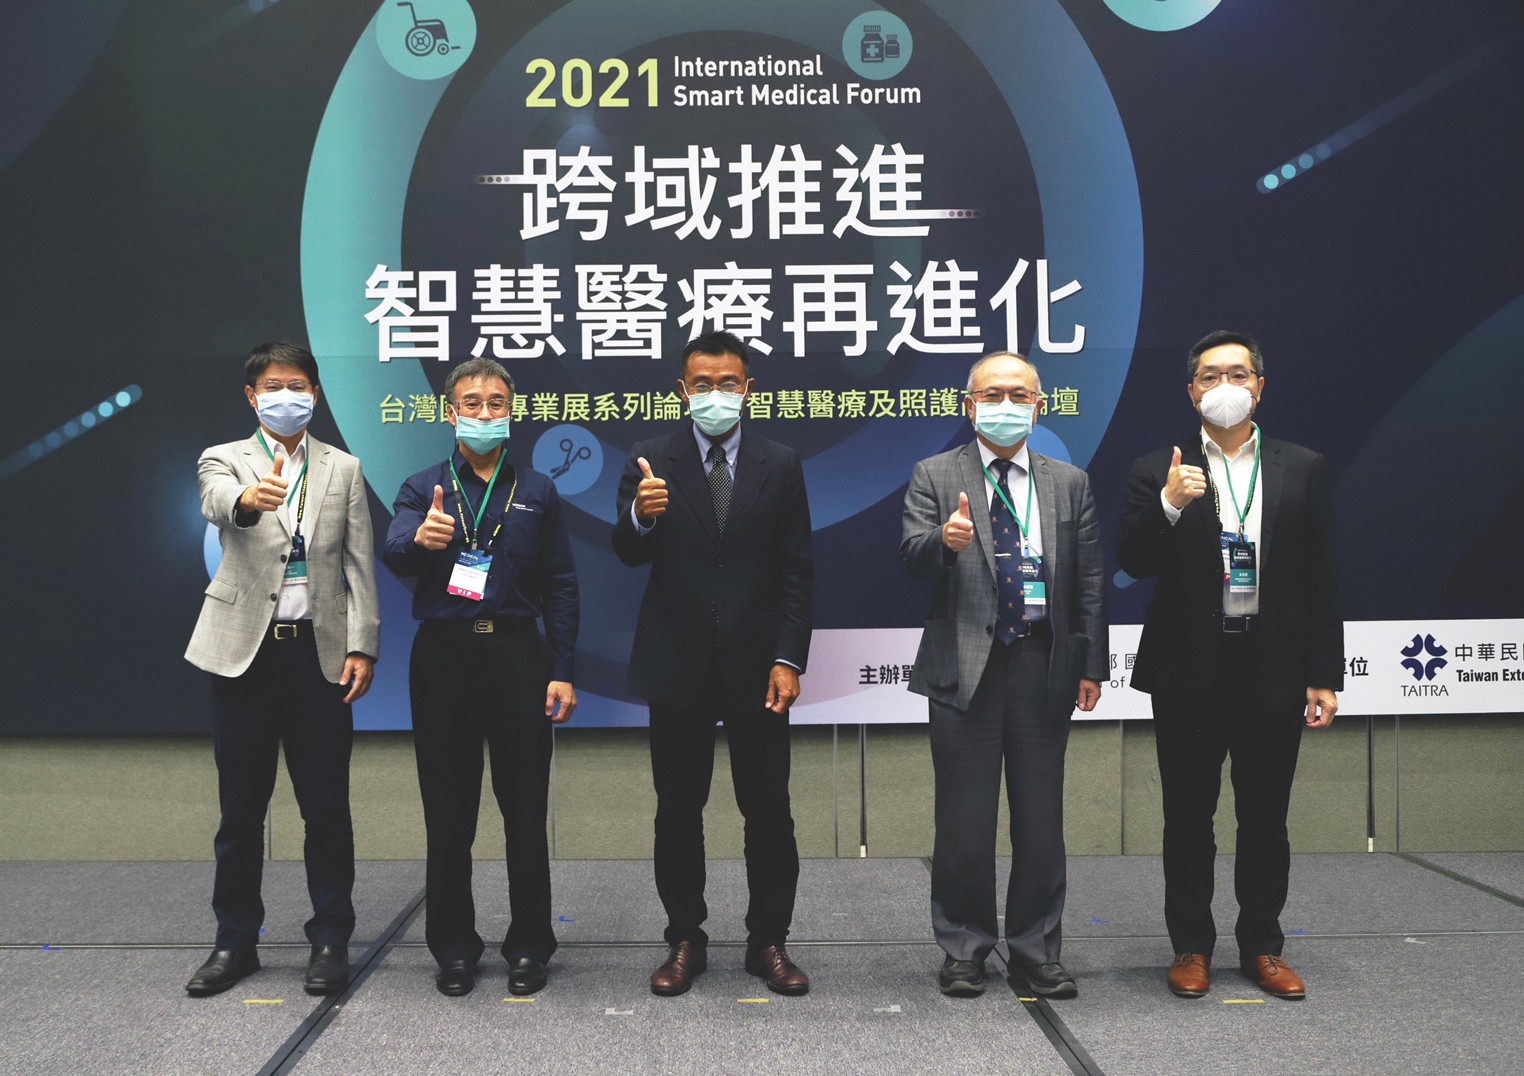 由經濟部國際貿易局主辦的2021年智慧醫療及照護高峰論壇於10月14日星期四在台北南港展覽館2館舉行。01